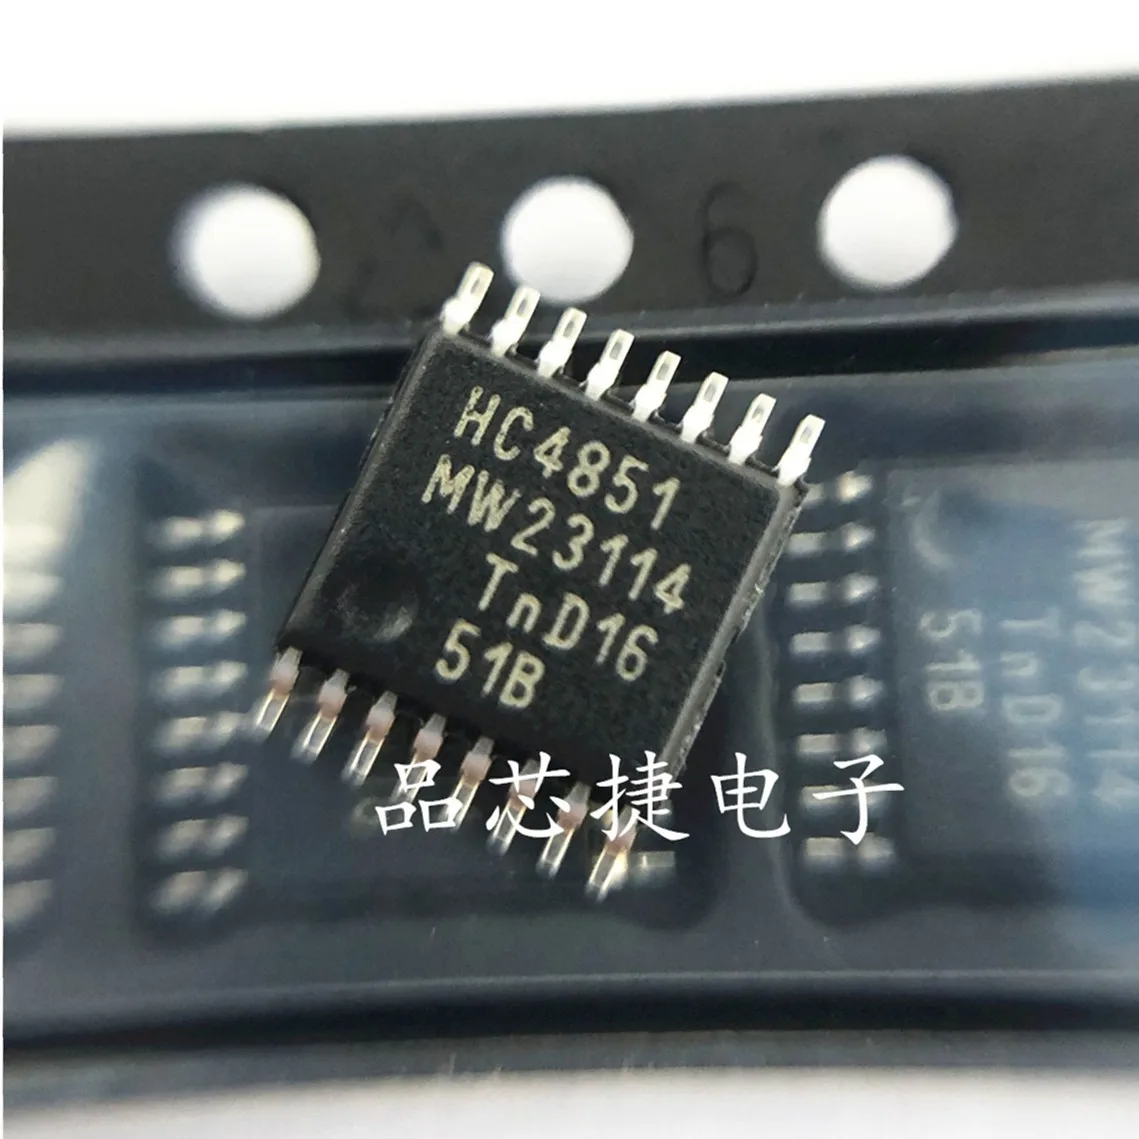 

10 шт. Оригинальный Новый Шелковый экран 74HC4851PW HC4851 TSSOP16 мультиплексный переключатель IC чип